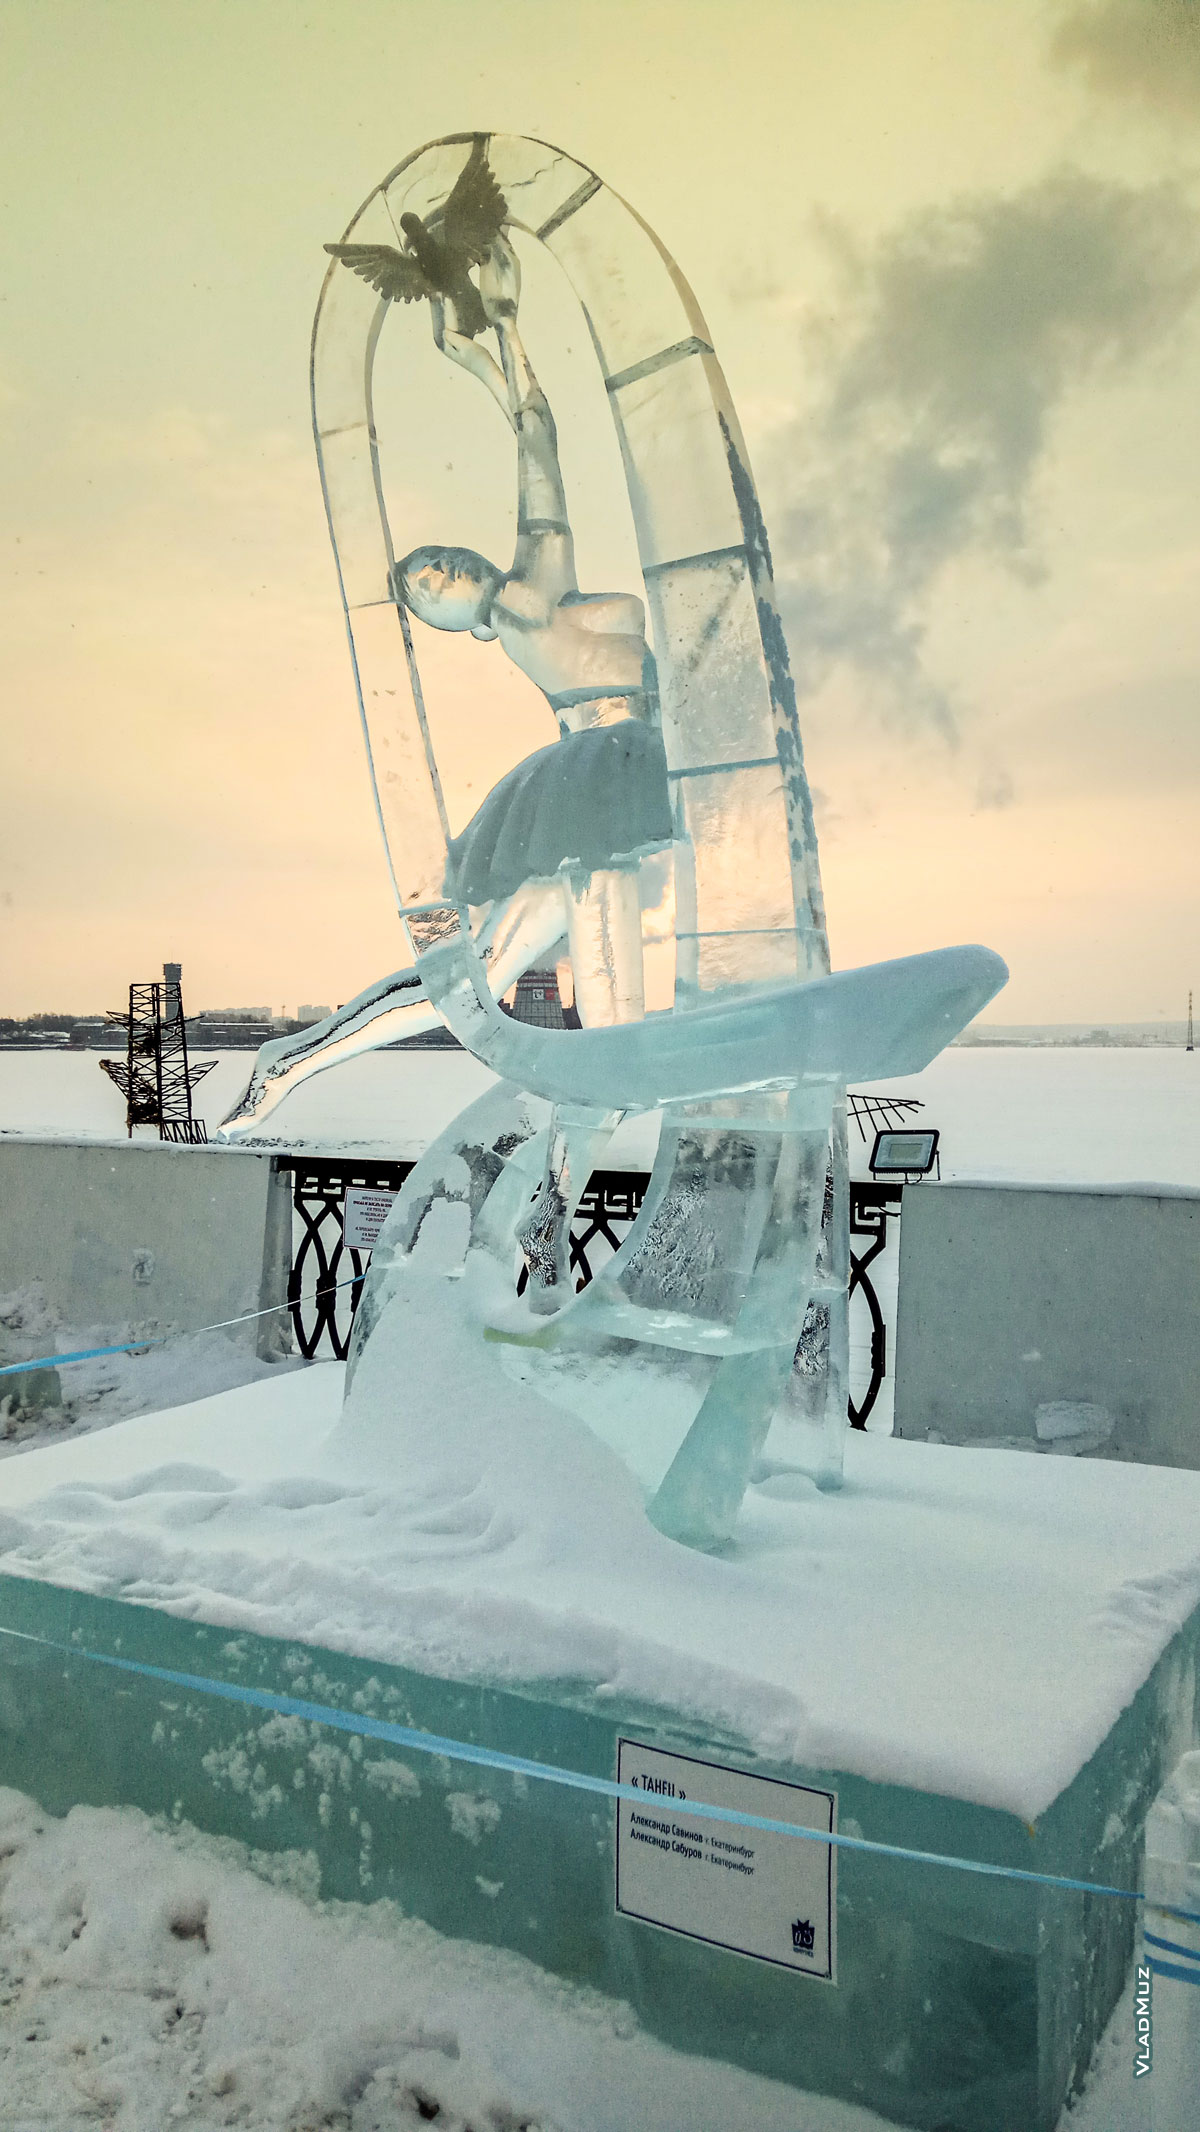 Ижевск, фестиваль «Удмуртский лед». Фото ледовой скульптуры «Танец», занесенной снегом